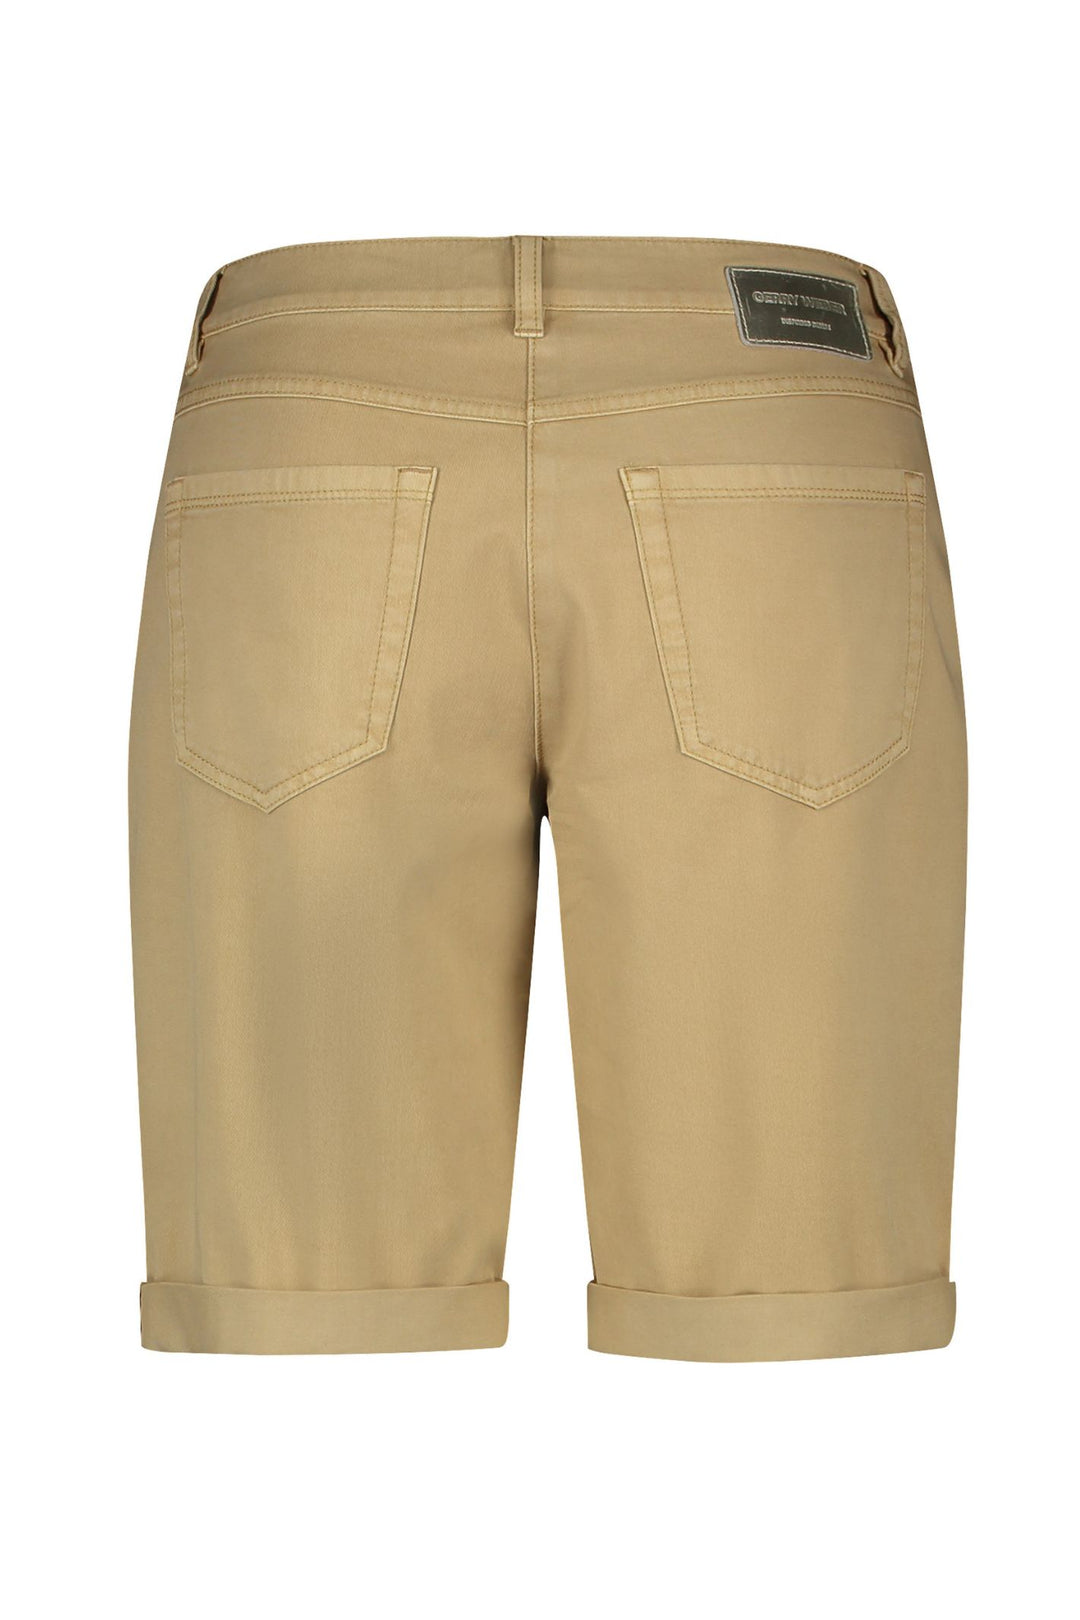 Gerry Weber 222135 Dune Cotton Shorts